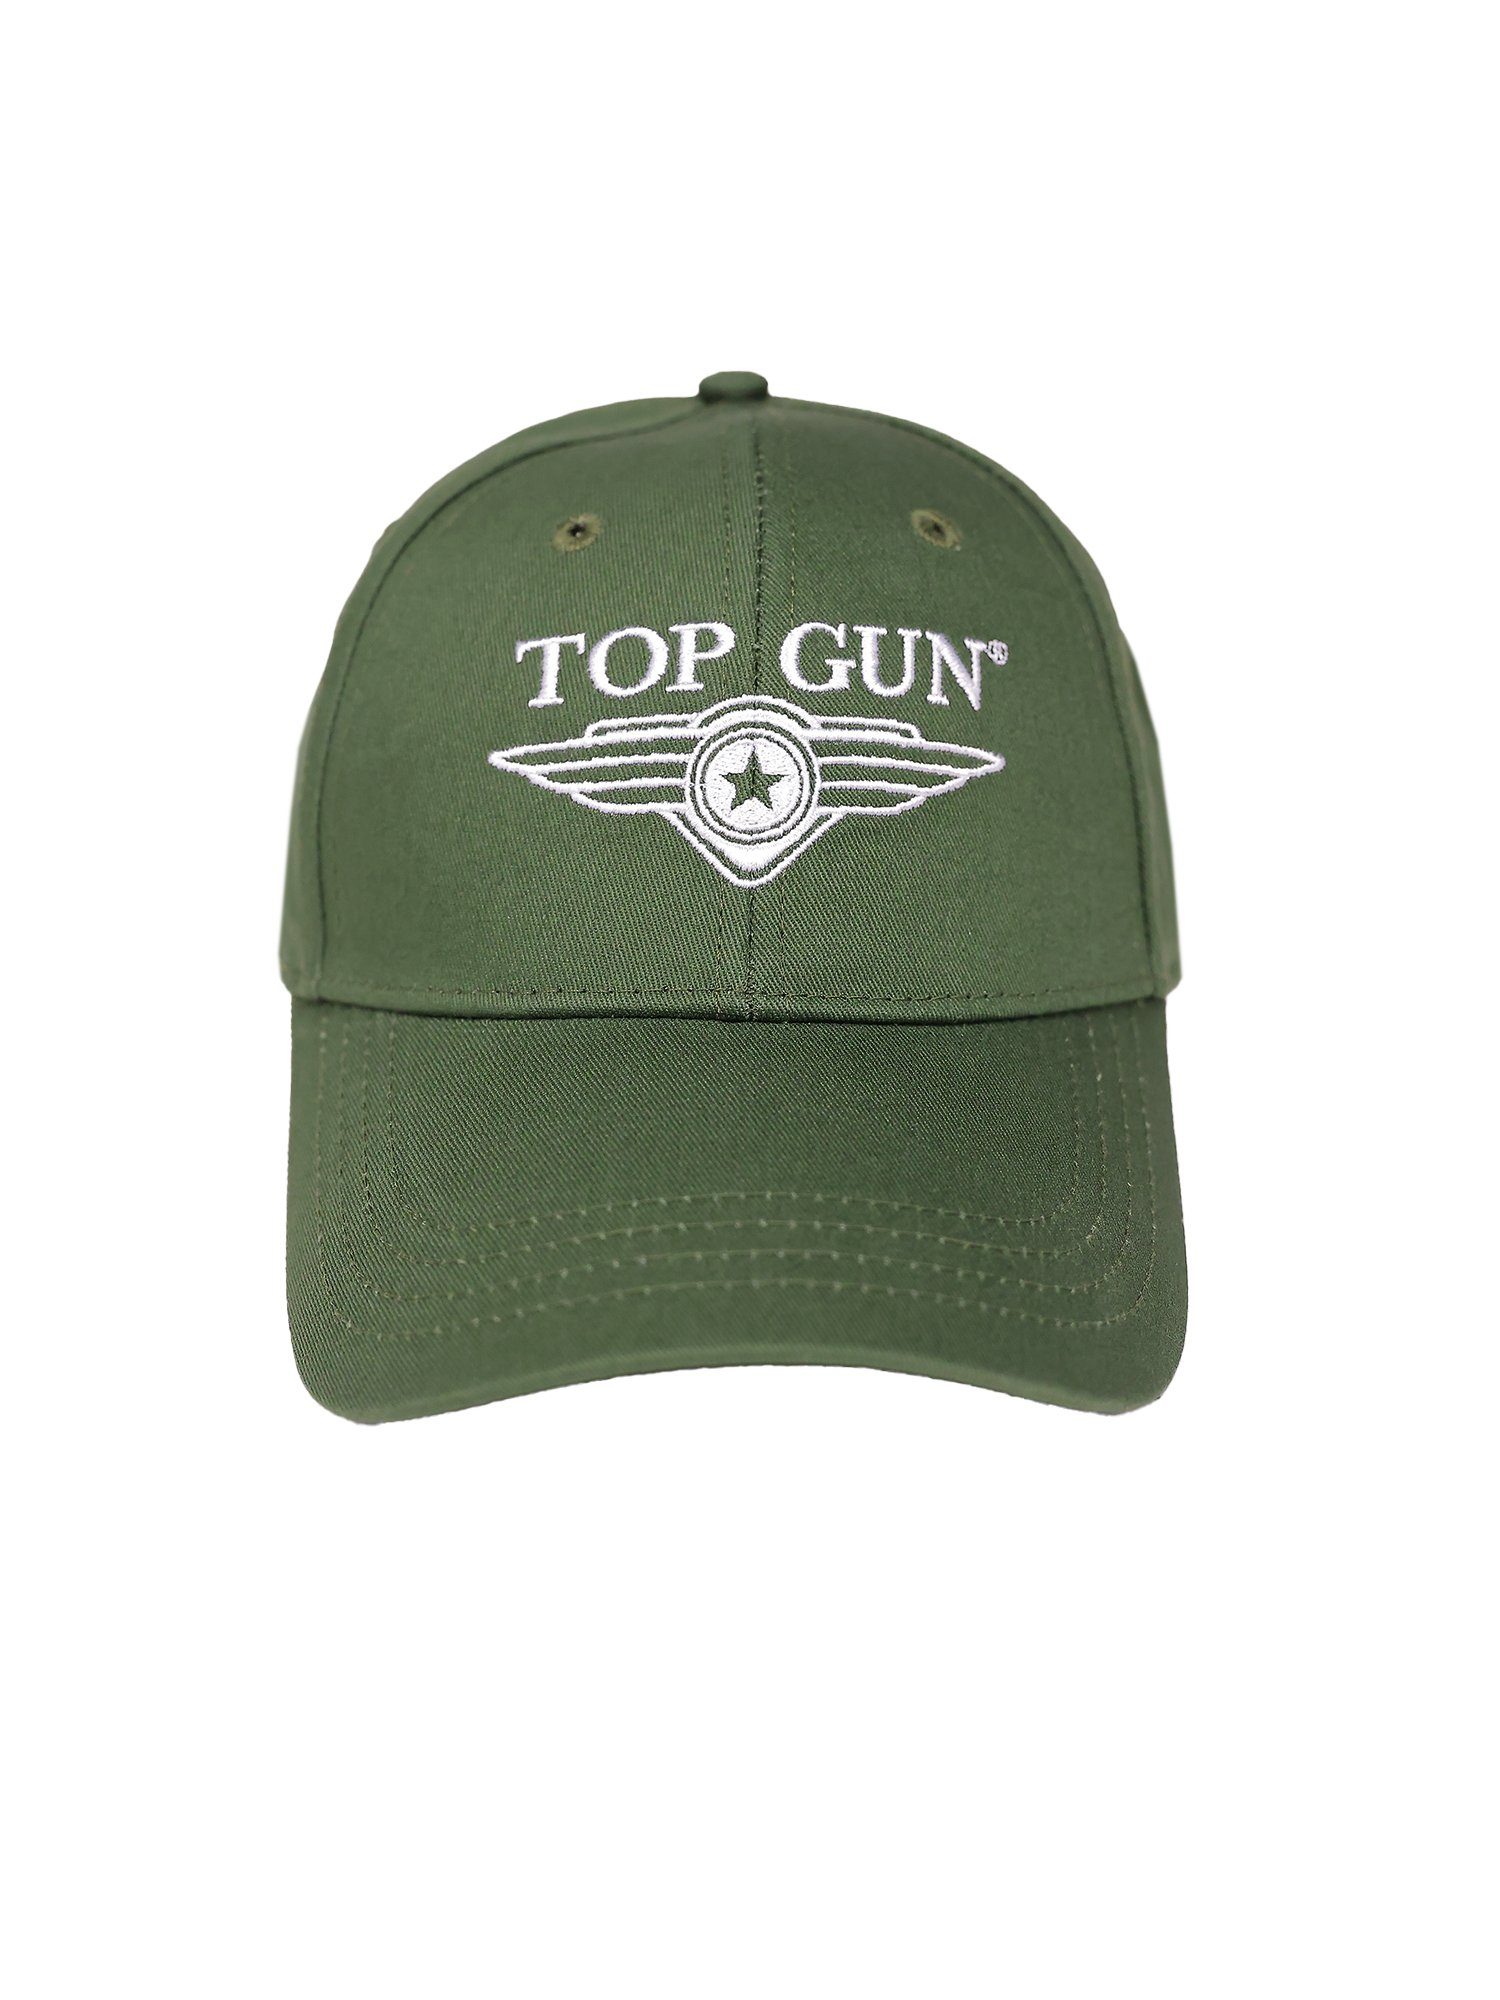 olive GUN Cap TG22013 Snapback TOP